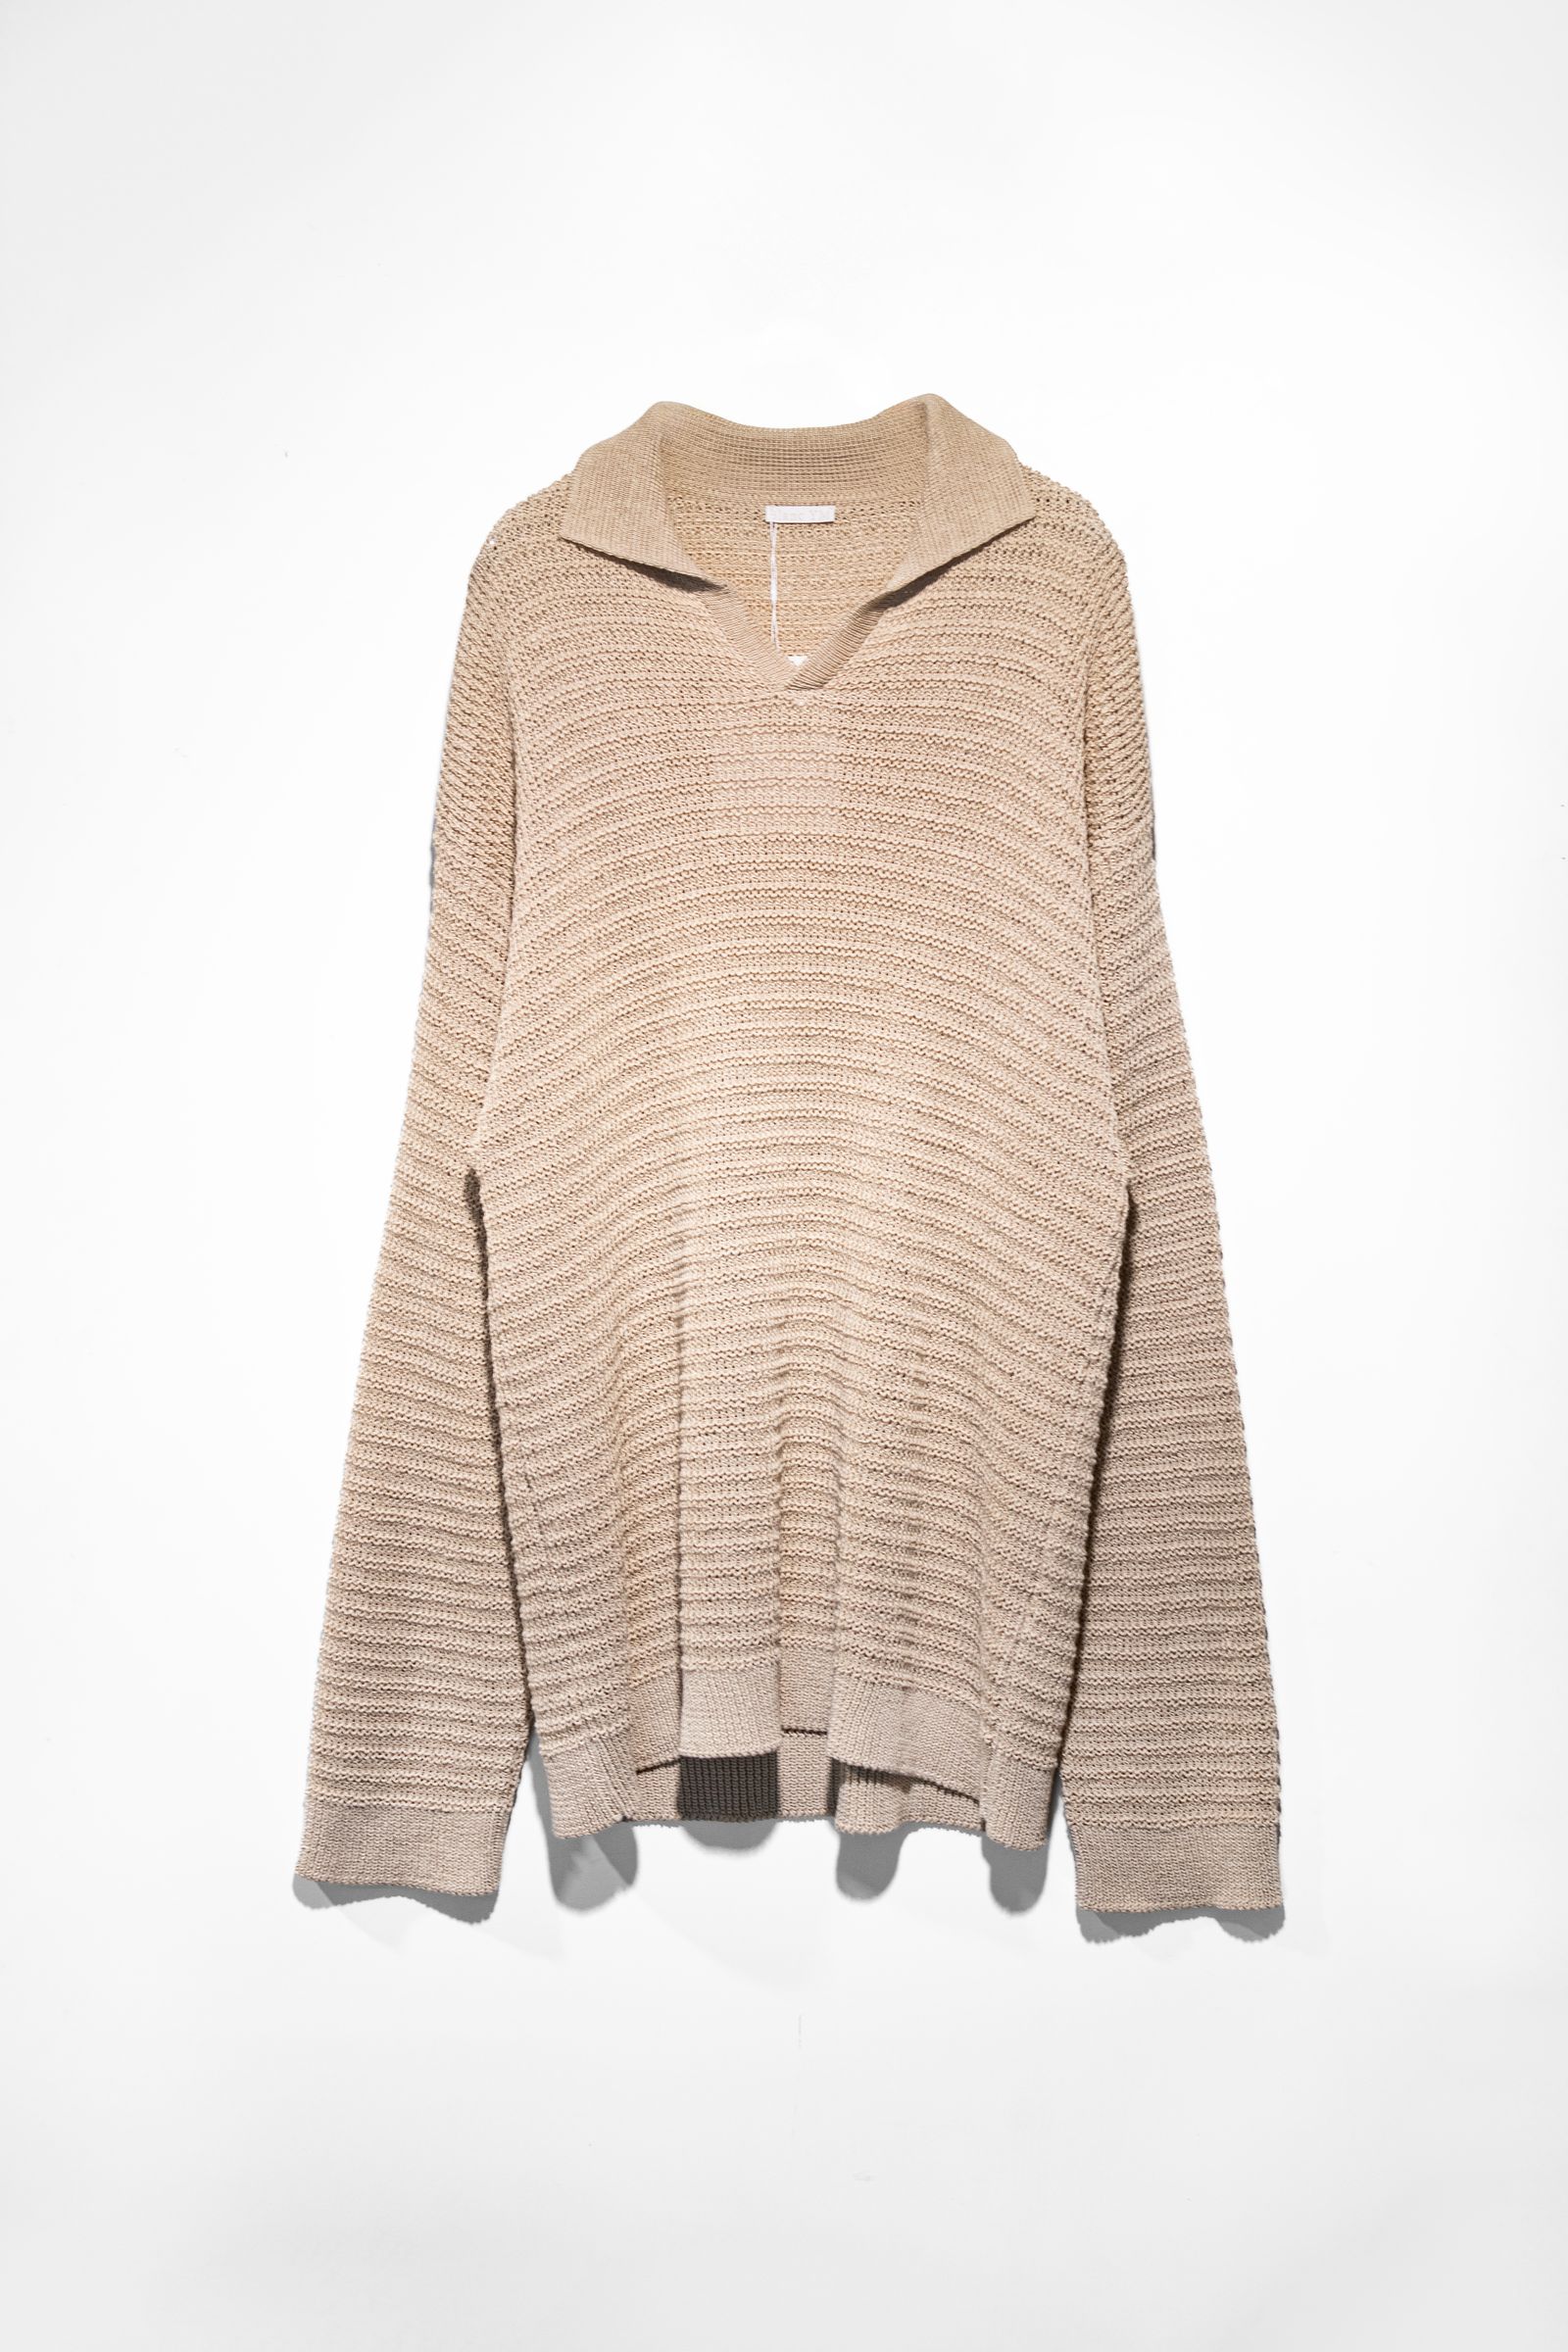 Blanc YM - Skipper Knit Shirt / Beige | Retikle Online Store